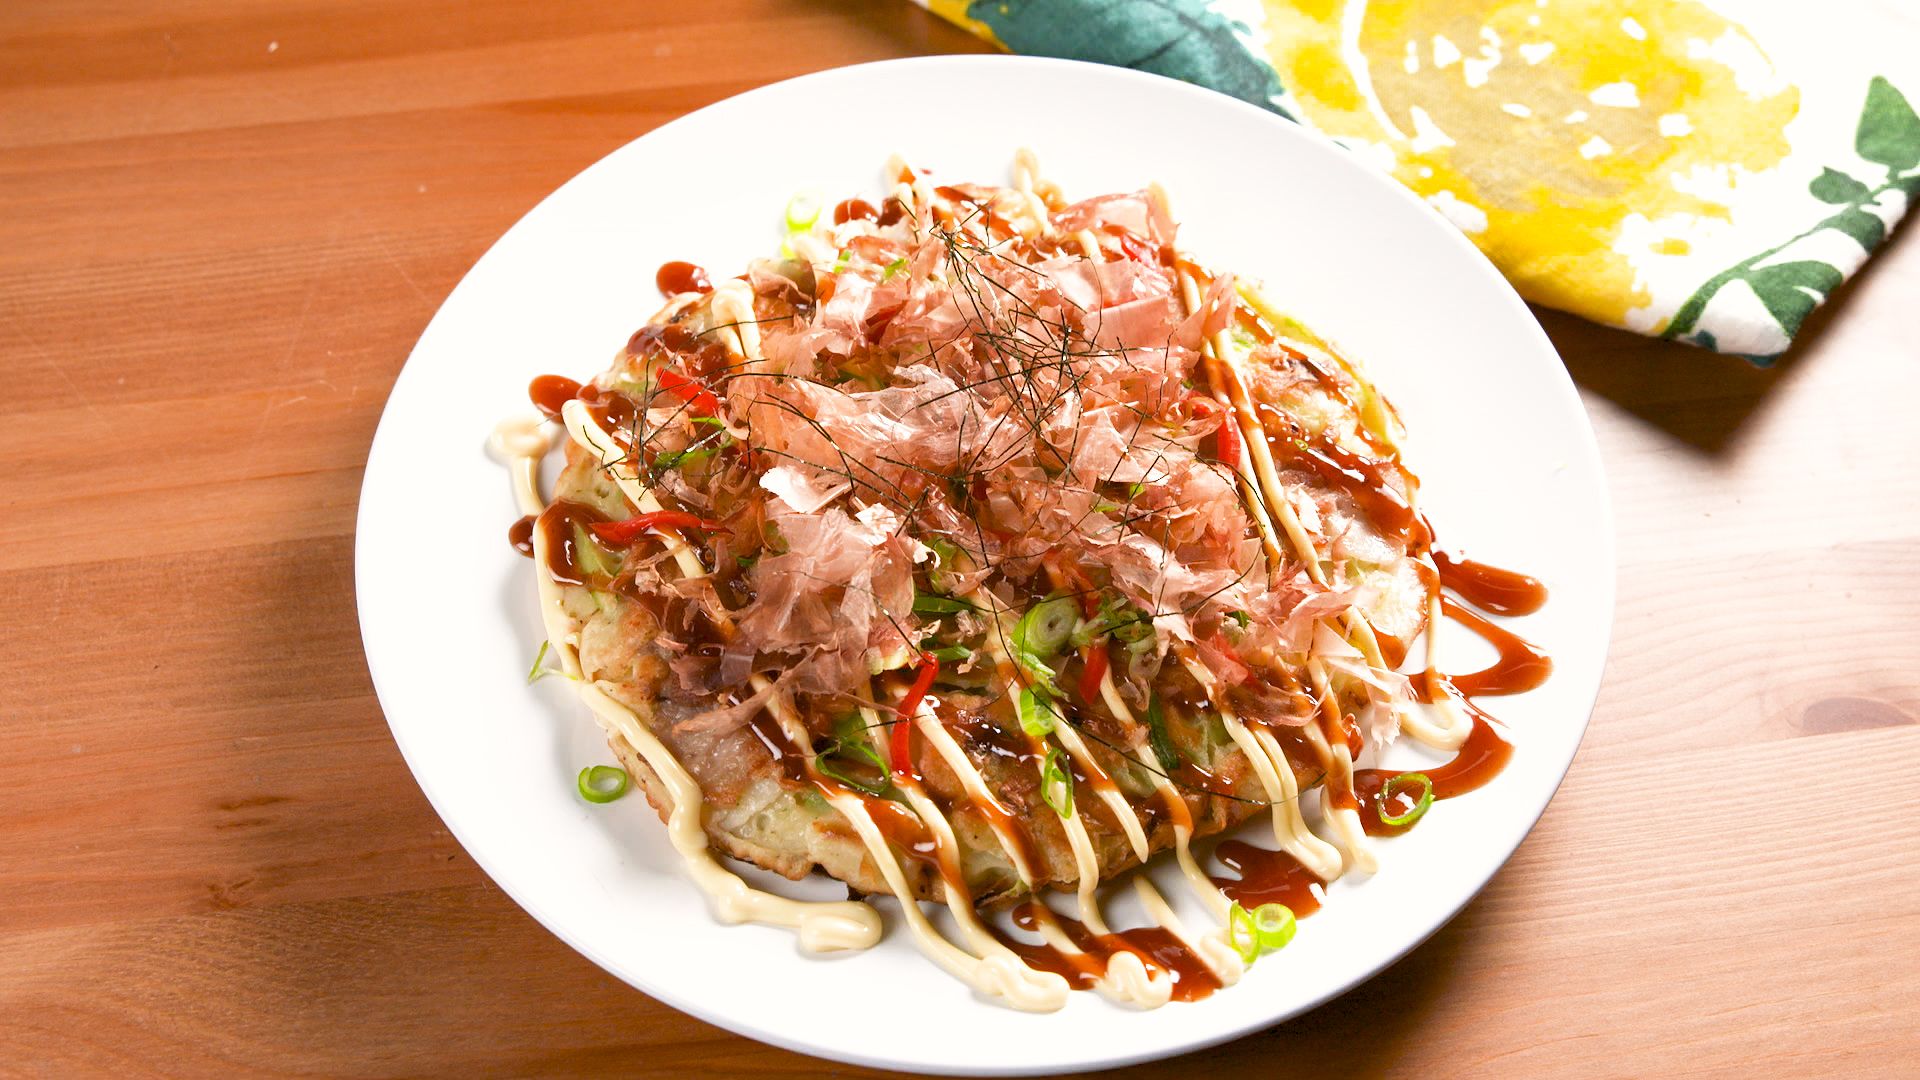  Otafuku Okonomiyaki Kit- Includes Okonomiyaki Flour And  Okonomiyaki Sauce For Japanese Savory Okonomiyaki Pancakes